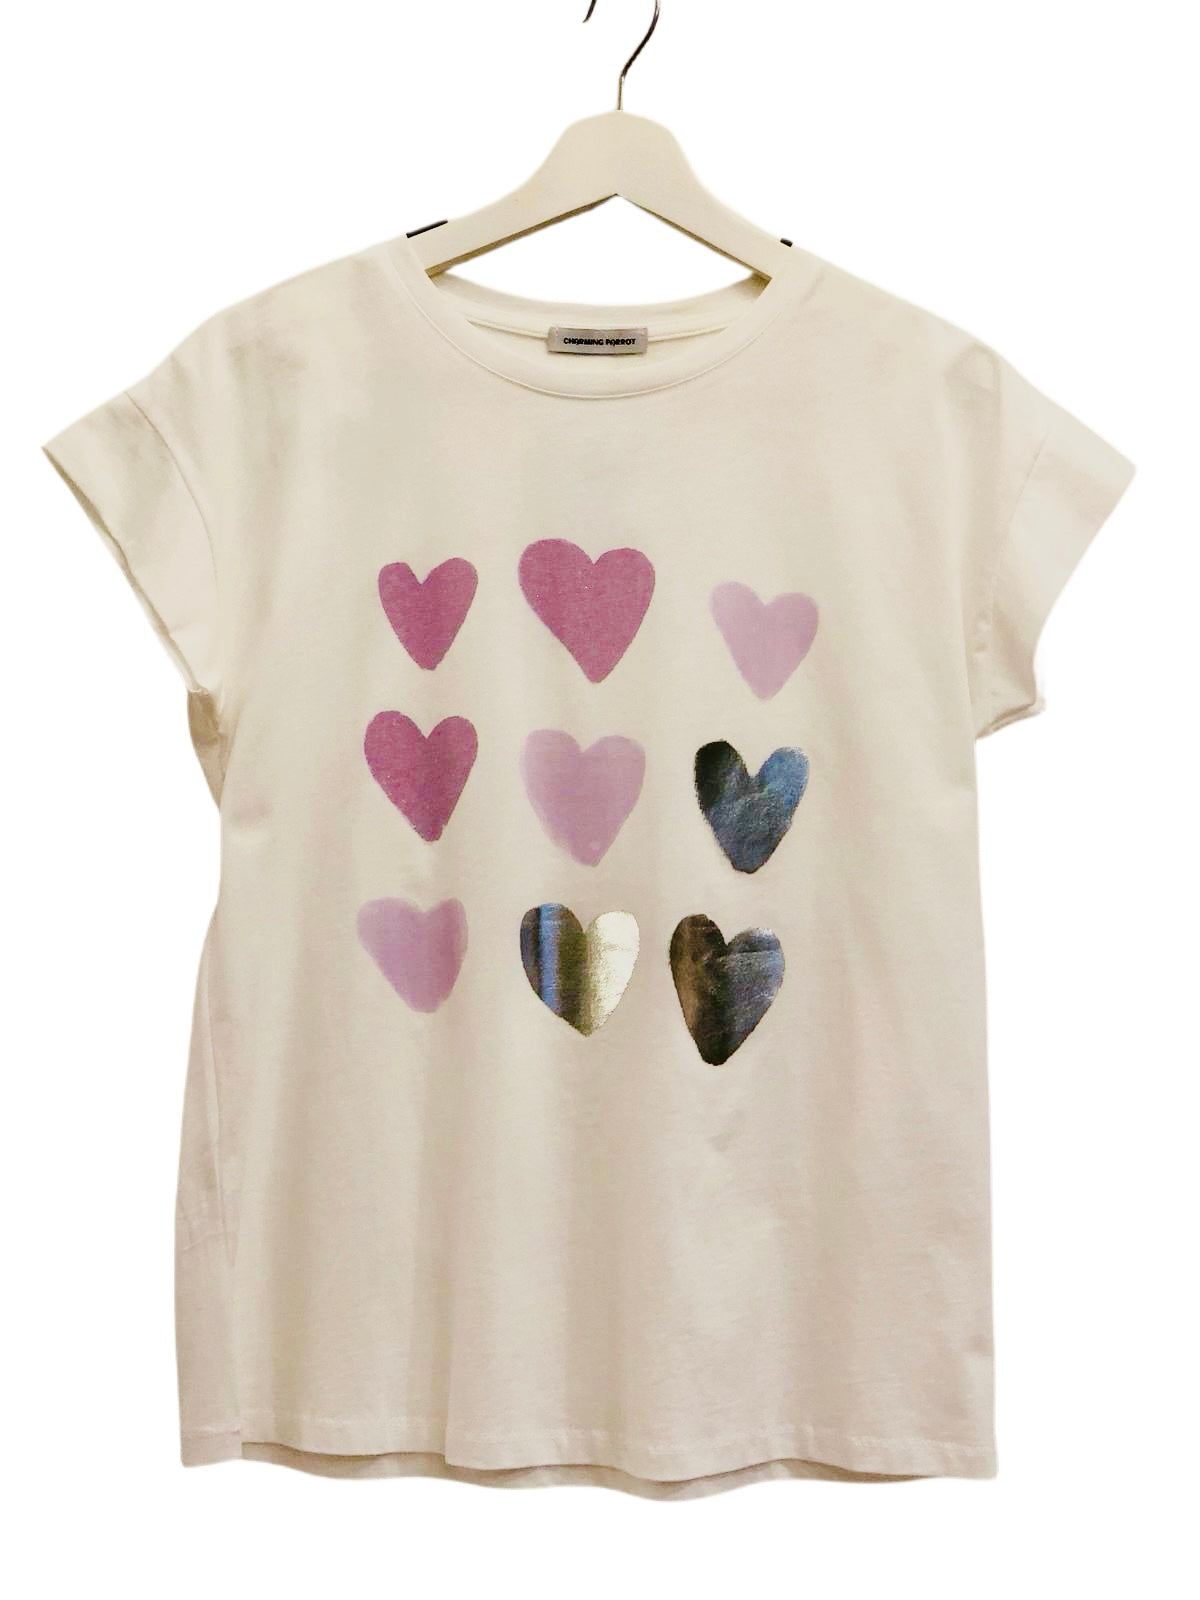 Much Love Heart design T-Shirt